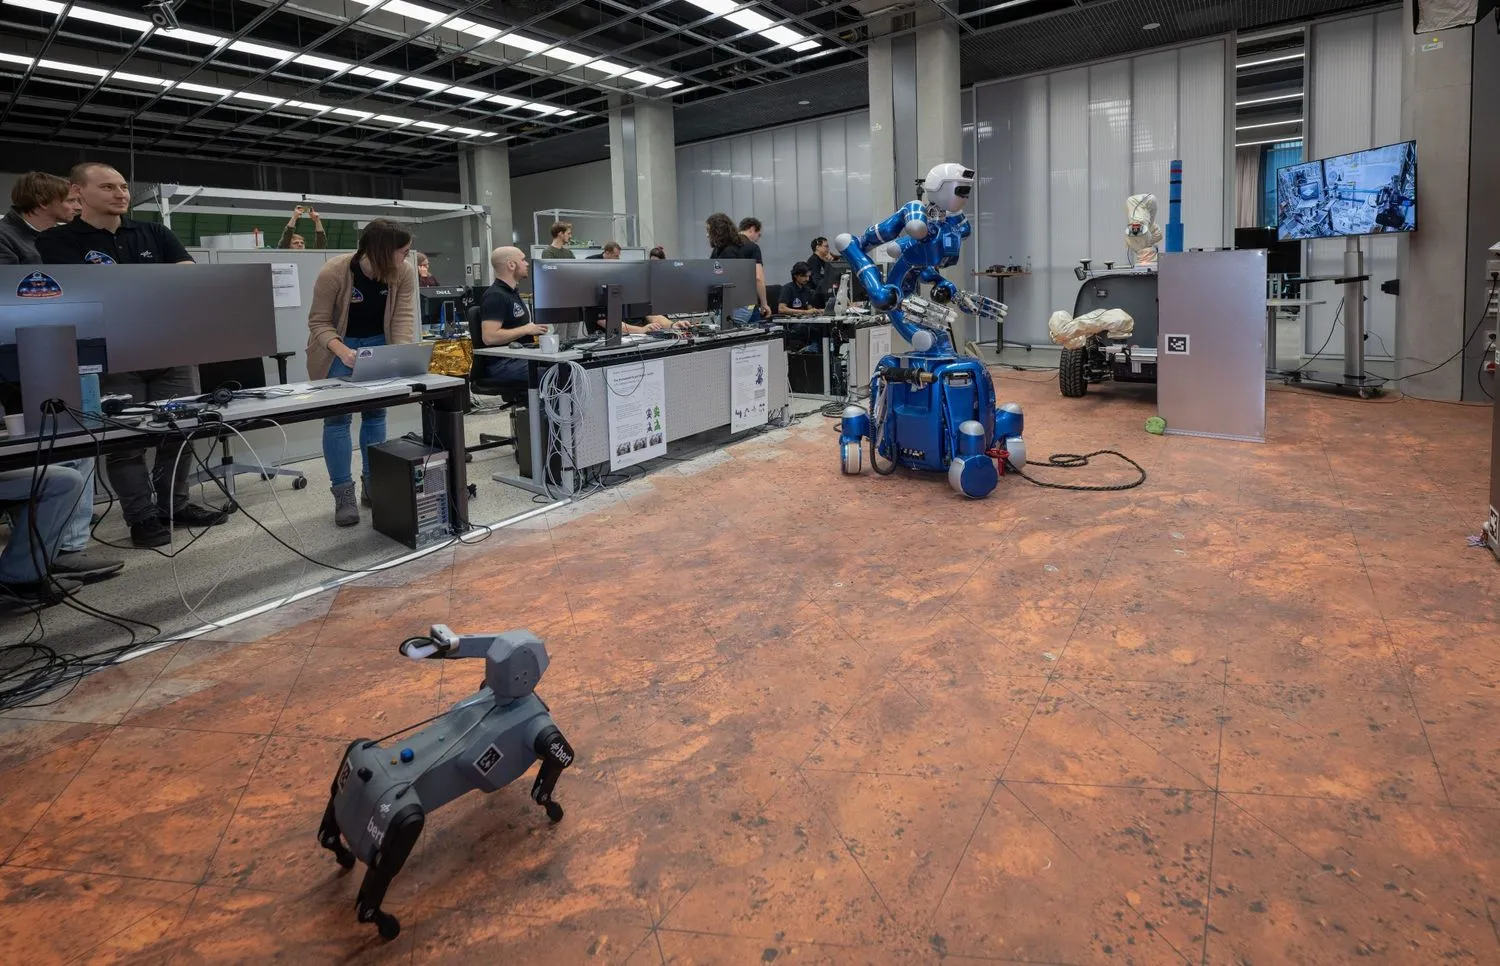 ein hundeähnlicher Roboter und ein humanoider Roboter auf Rädern rollen durch ein Labor, umgeben von Wissenschaftlern in T-Shirts, die an Computern stehen